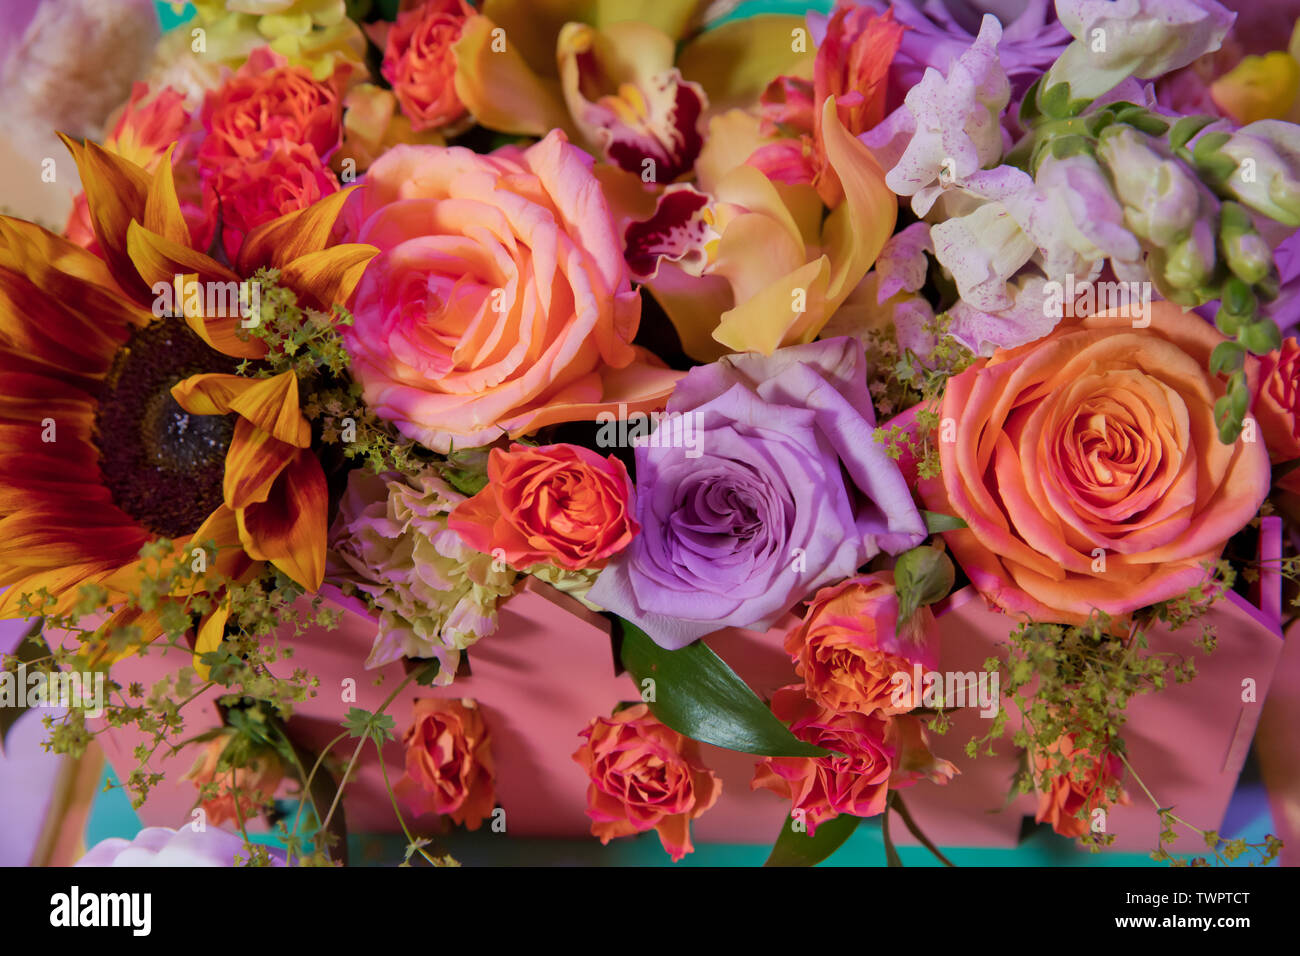 Arreglo floral mixto: varias flores en distintos tonos de rojo, rosa,  amarillo y naranja. Ramillete de flores coloridas con diversas flores de  primavera en f Fotografía de stock - Alamy